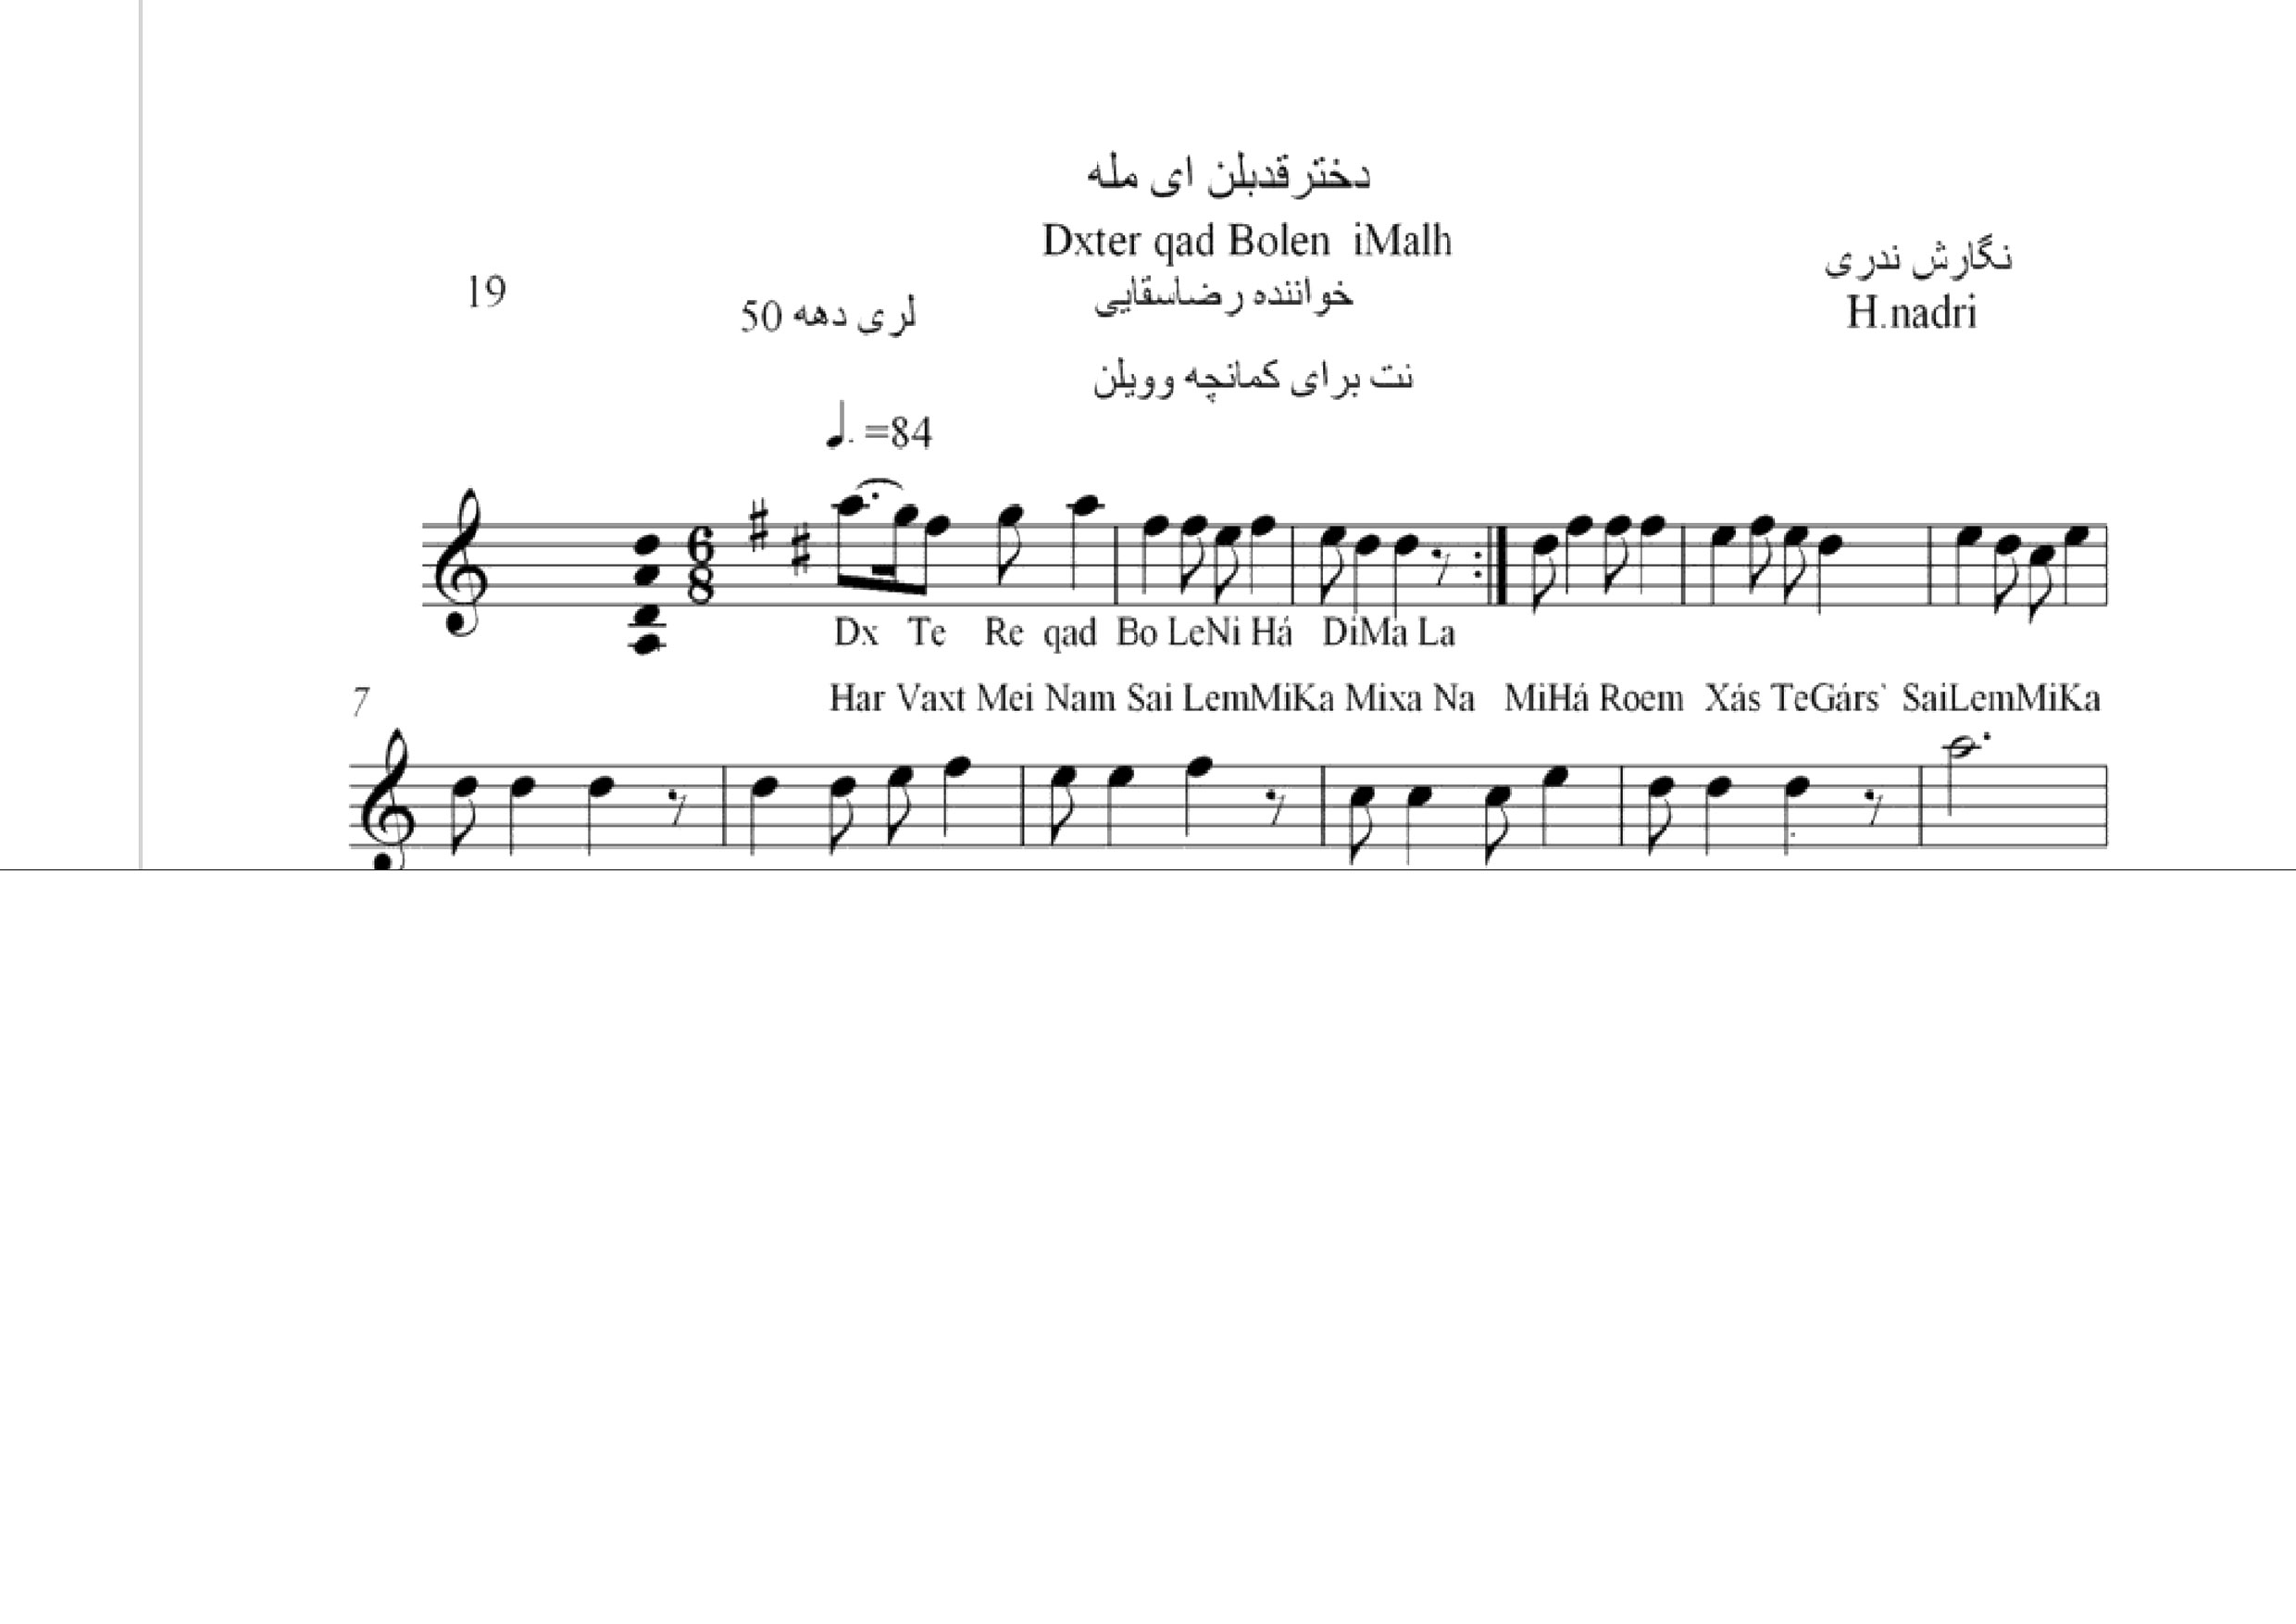 نت آهنگ دختر قدبلن ای مله محلی لری حجت اله ندری قابل اجرا با کمانچه و دیگر سازها